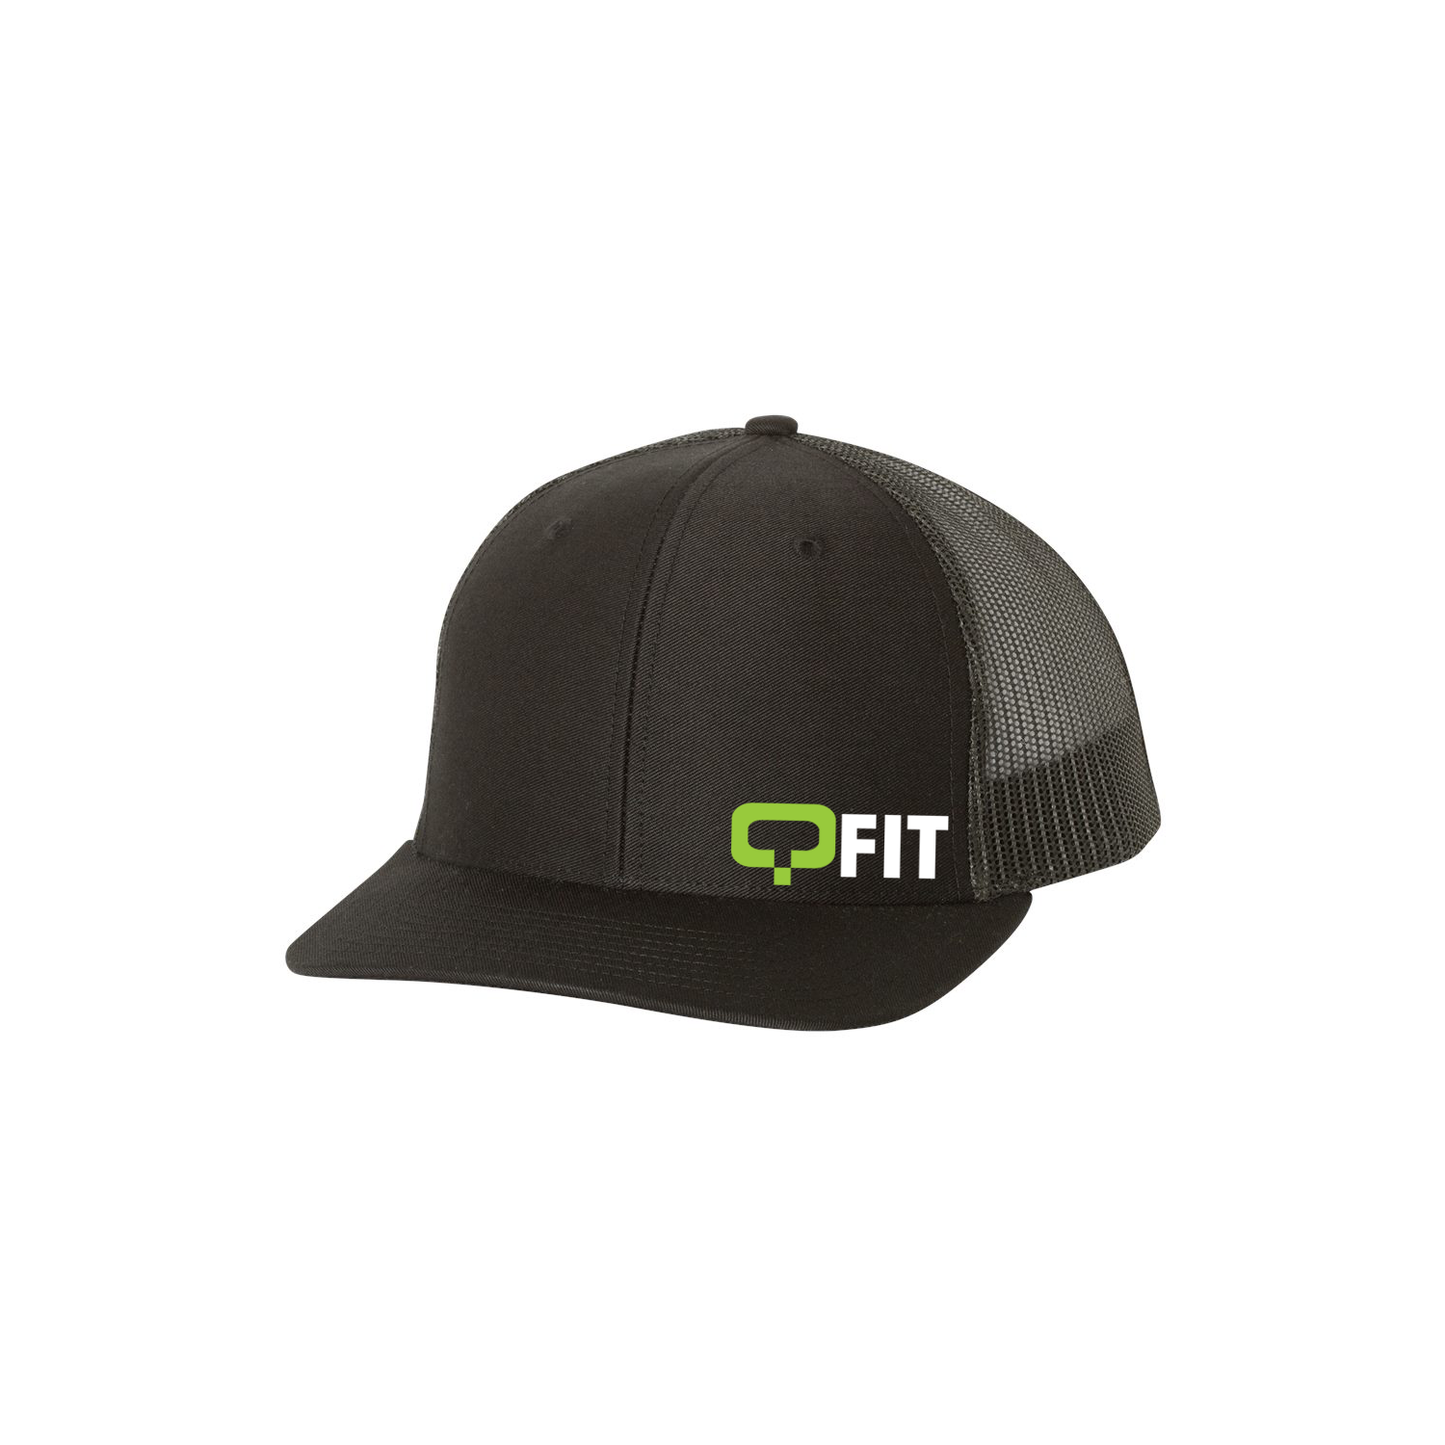 QFIT Snapback Trucker Hat